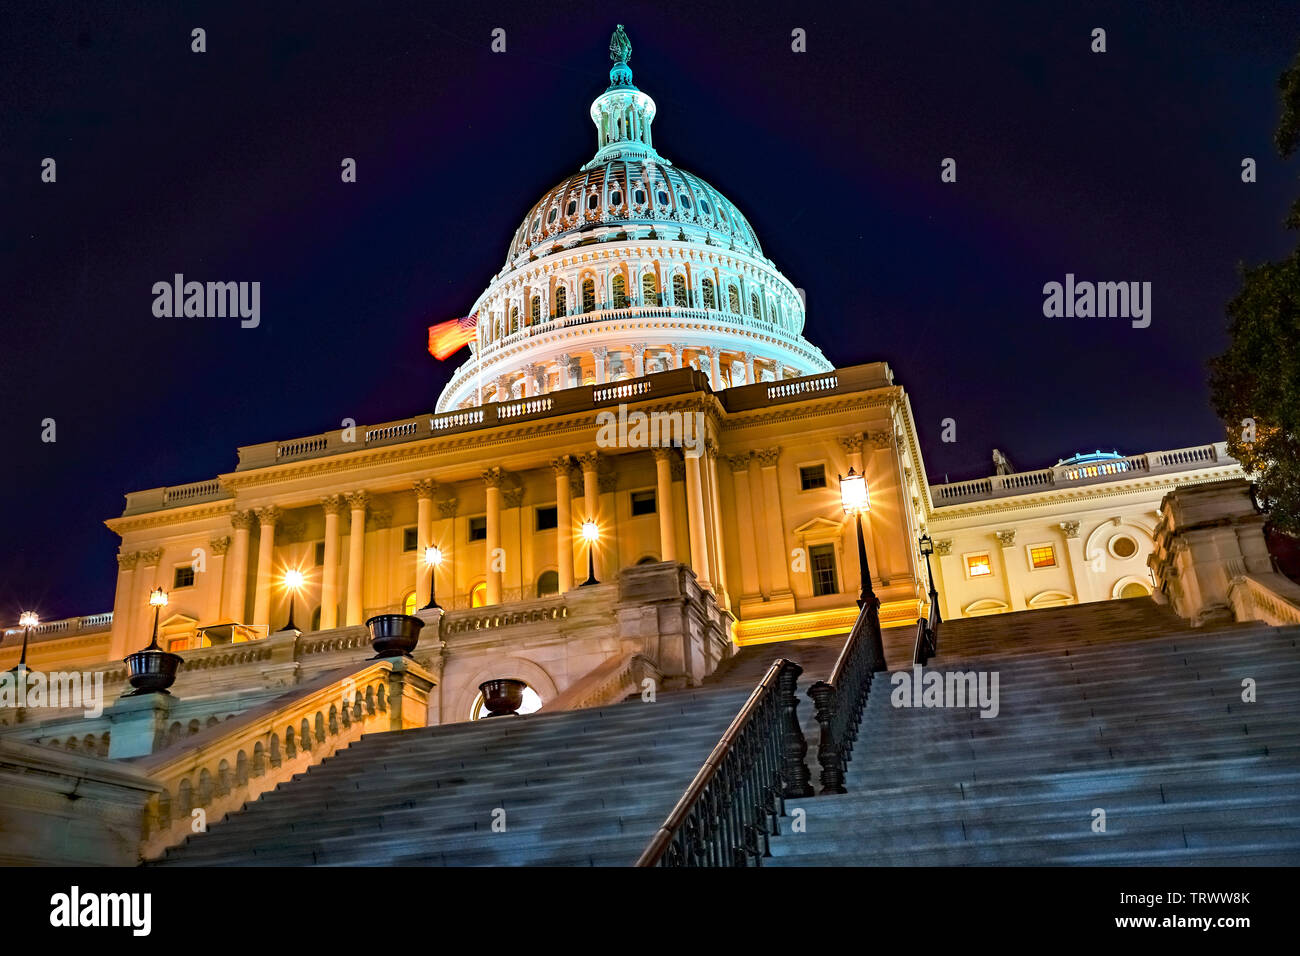 US Capitol Lado Sur noche estrellas Casa del Congreso representantes del Senado de la ciudad capital de Washington DC. Foto de stock